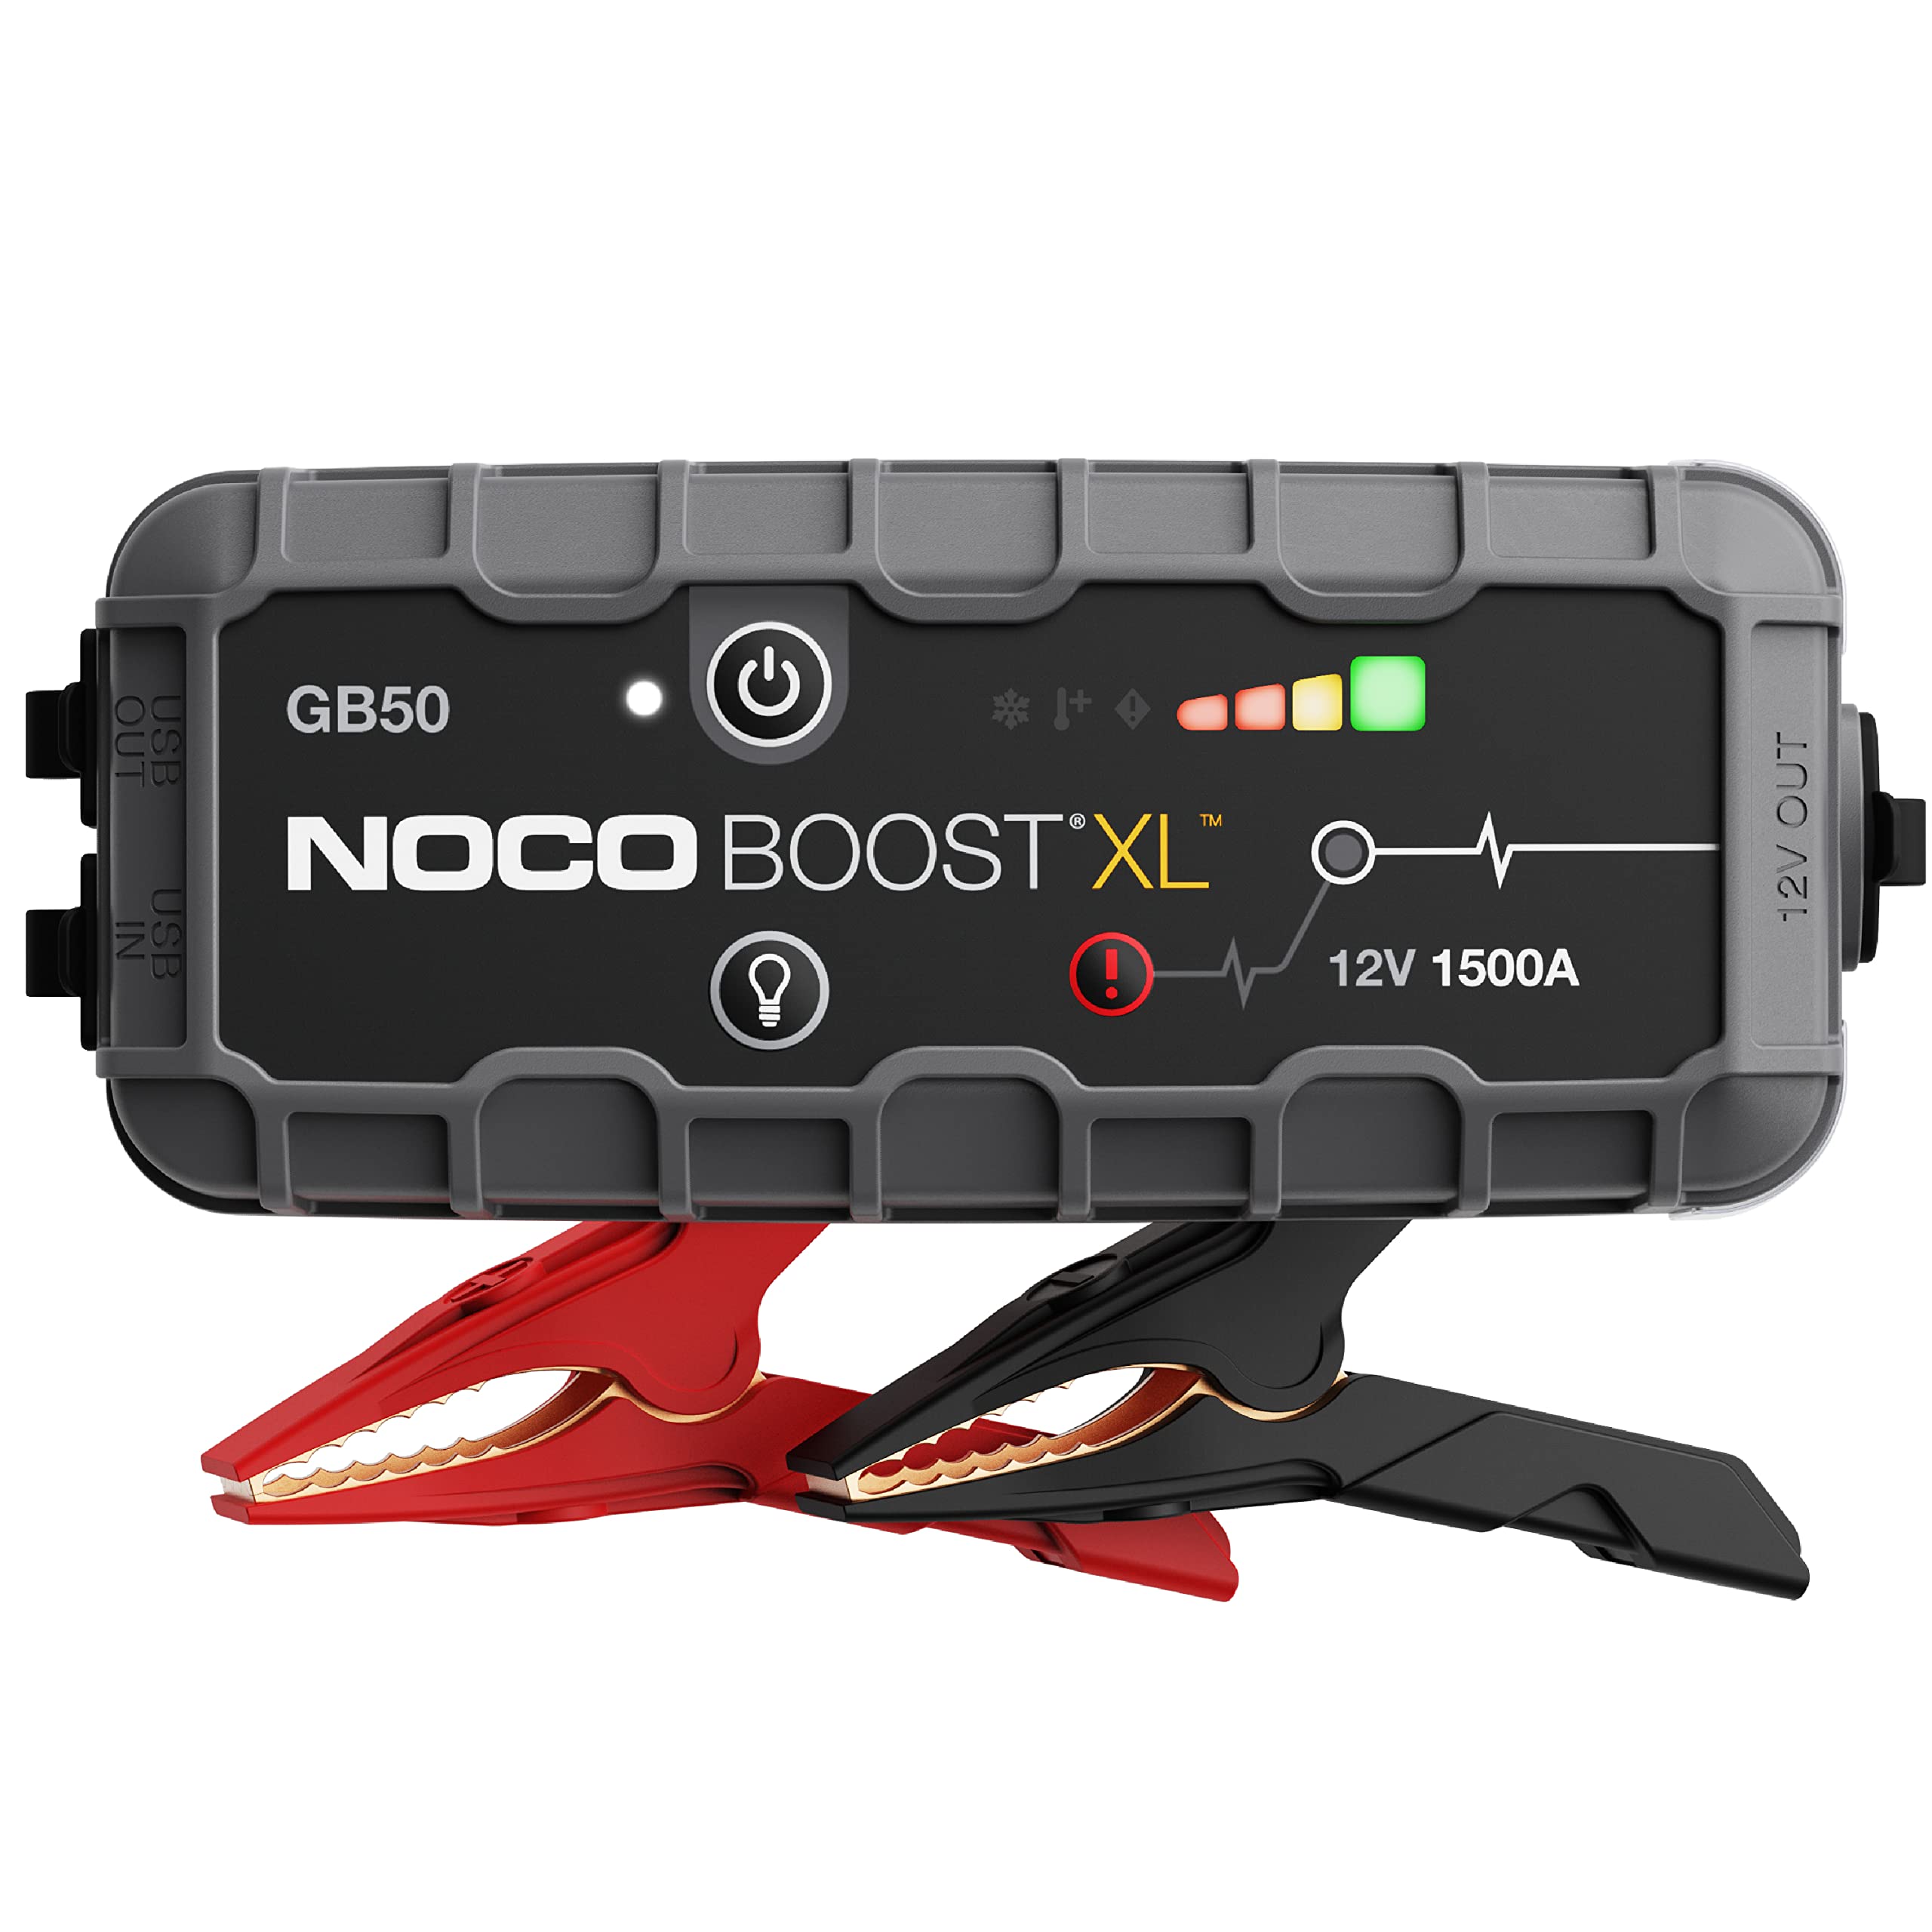 NOCO Boost XL GB50 1500 安培 12 伏超安全锂应急启动箱、汽车电池升压器包、便携式移动电源充电器以及适用于最多 7 升汽油和 4 升柴油发动机的跨接电缆